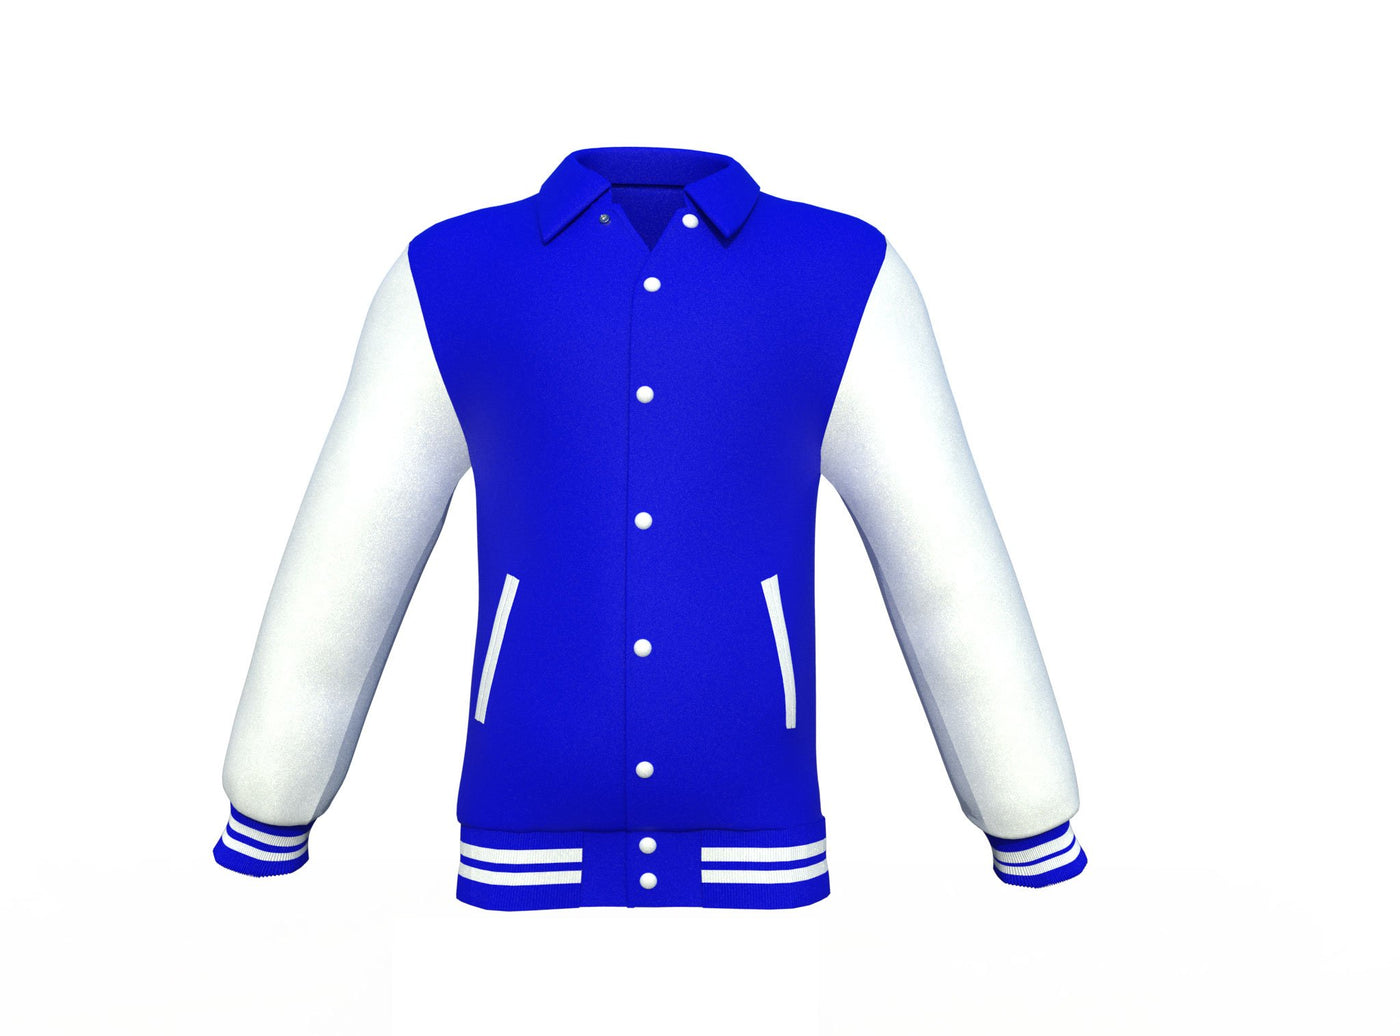 Fashionable Blue Varsity Letterman Jacket with White Sleeves